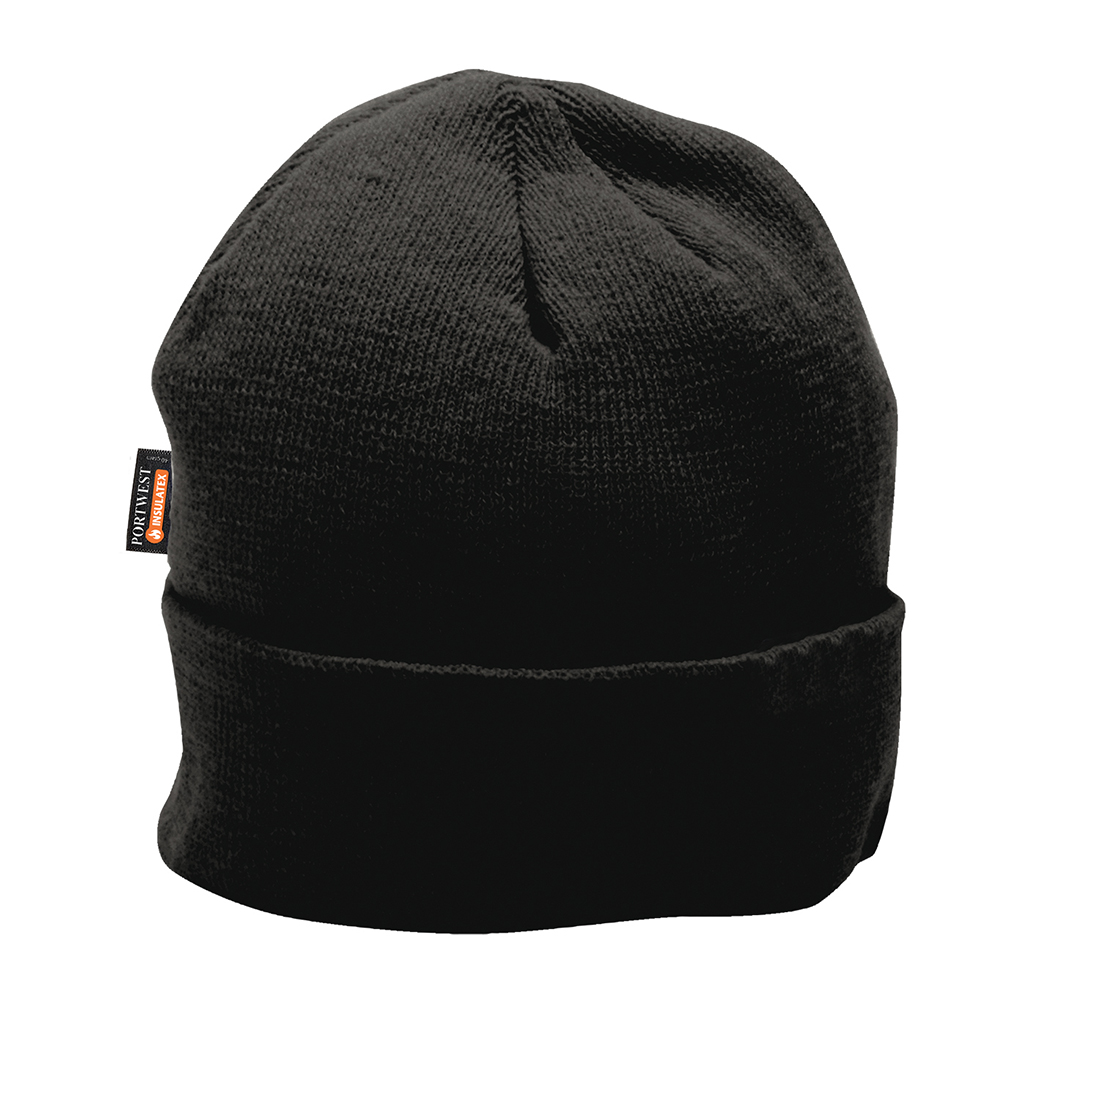 Zateplená čepice Insulatex Barva: černá